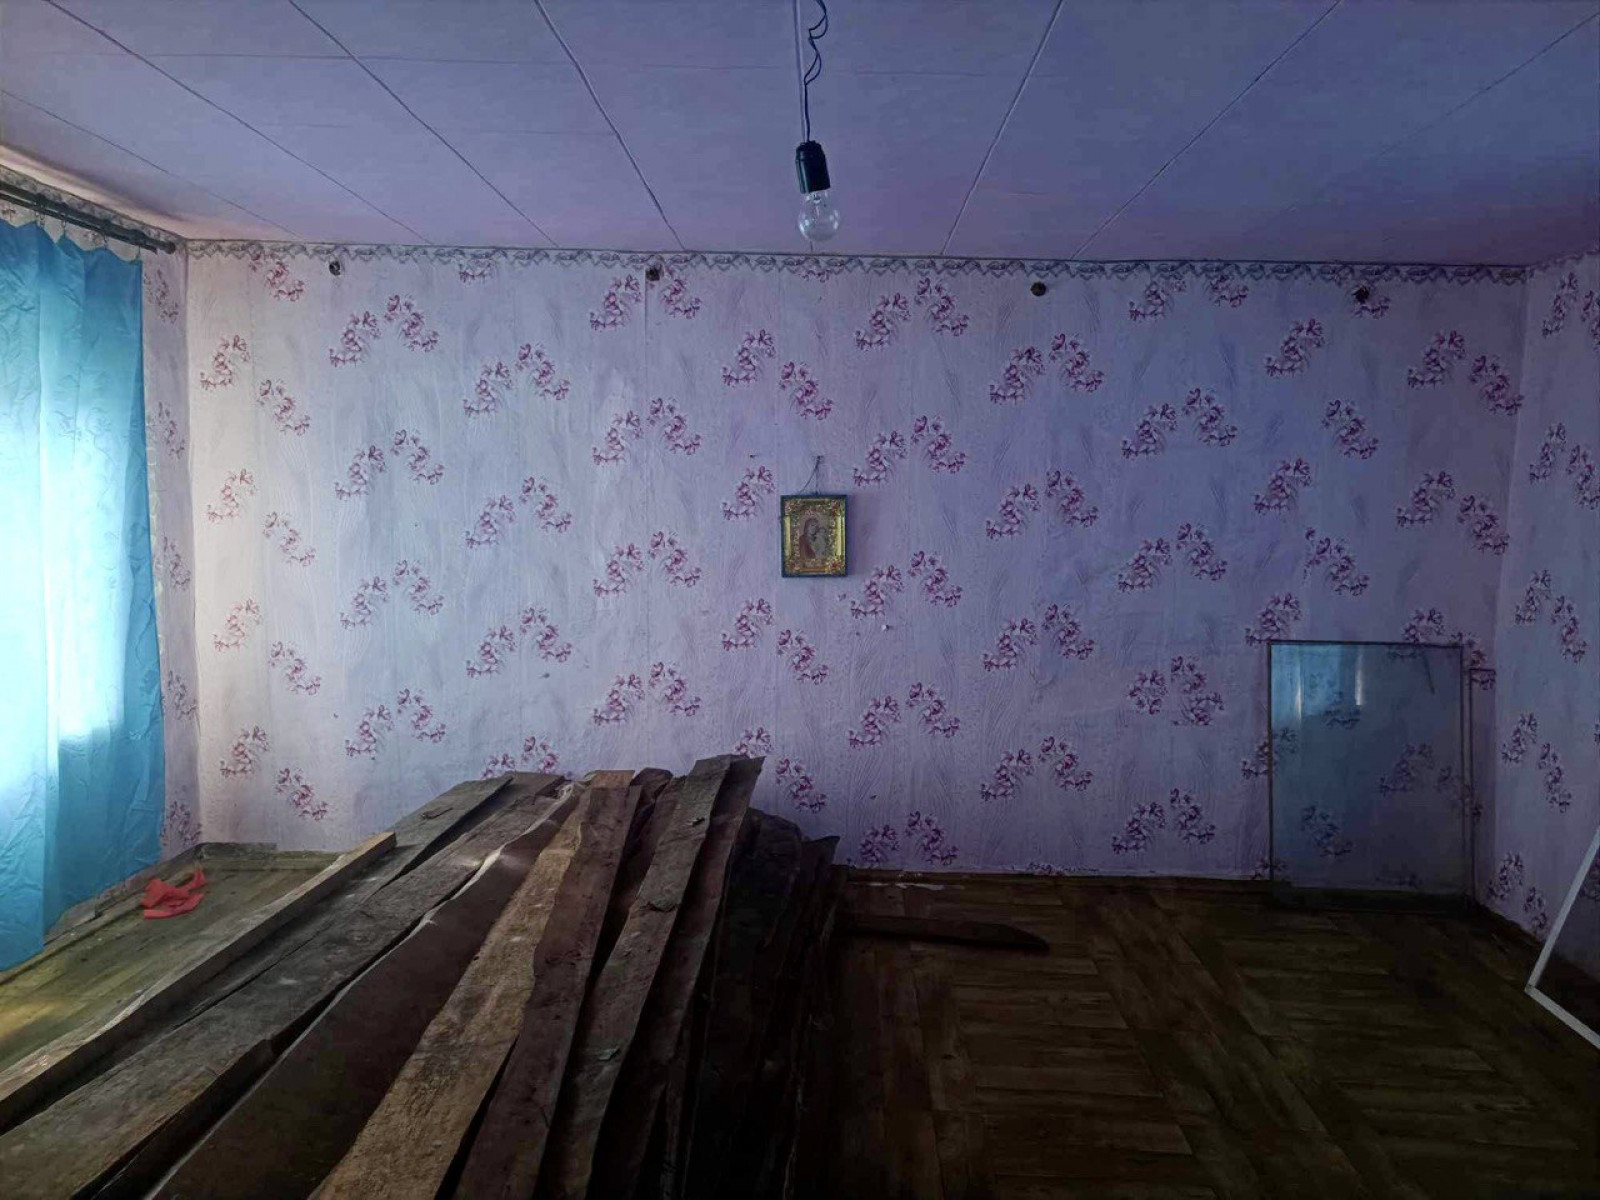 Продам будинок в селі Авдіївка(сосницький р-н), 50м2 СЕРТИФІКАТ